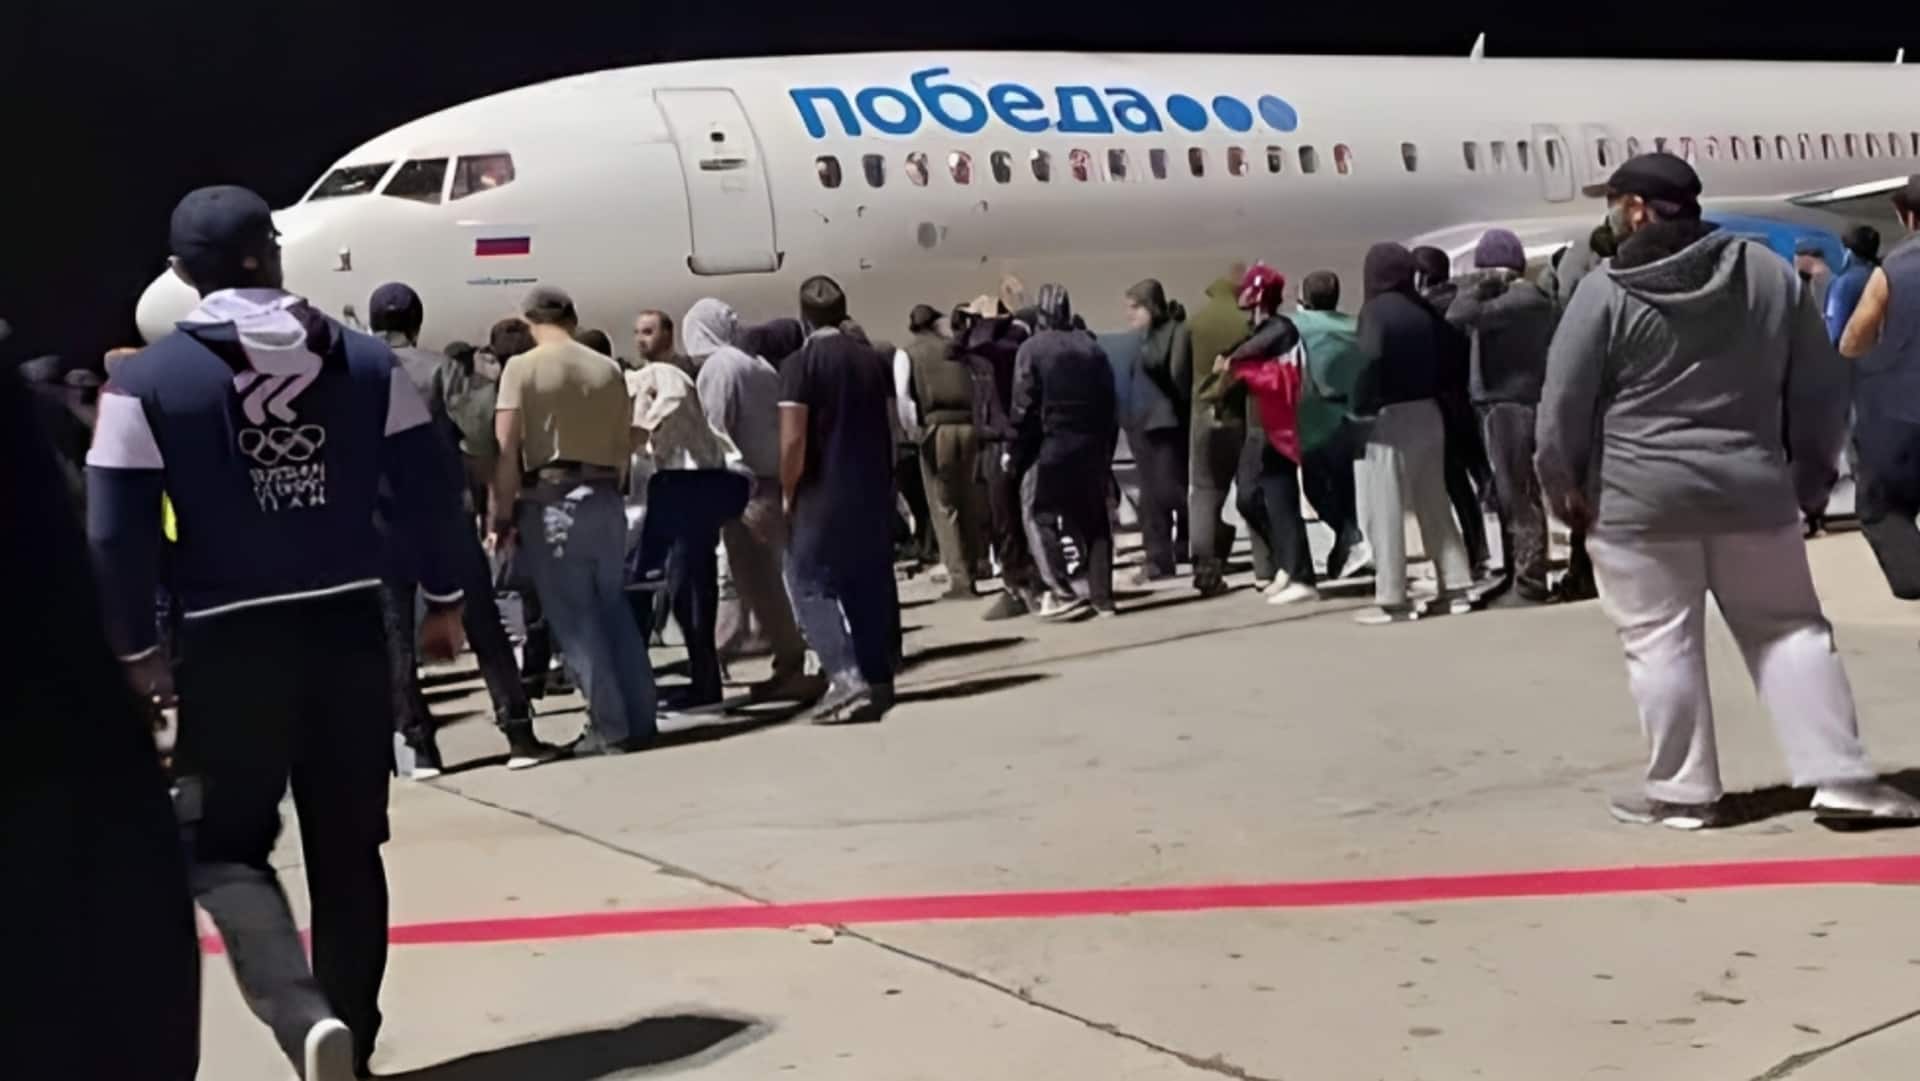 हवाई अड्डे पर फिलिस्तीन समर्थकों ने लगाए 'अल्लाहु अकबर' के नारे, रूस ने 'बाहरी हस्तक्षेप' बताया